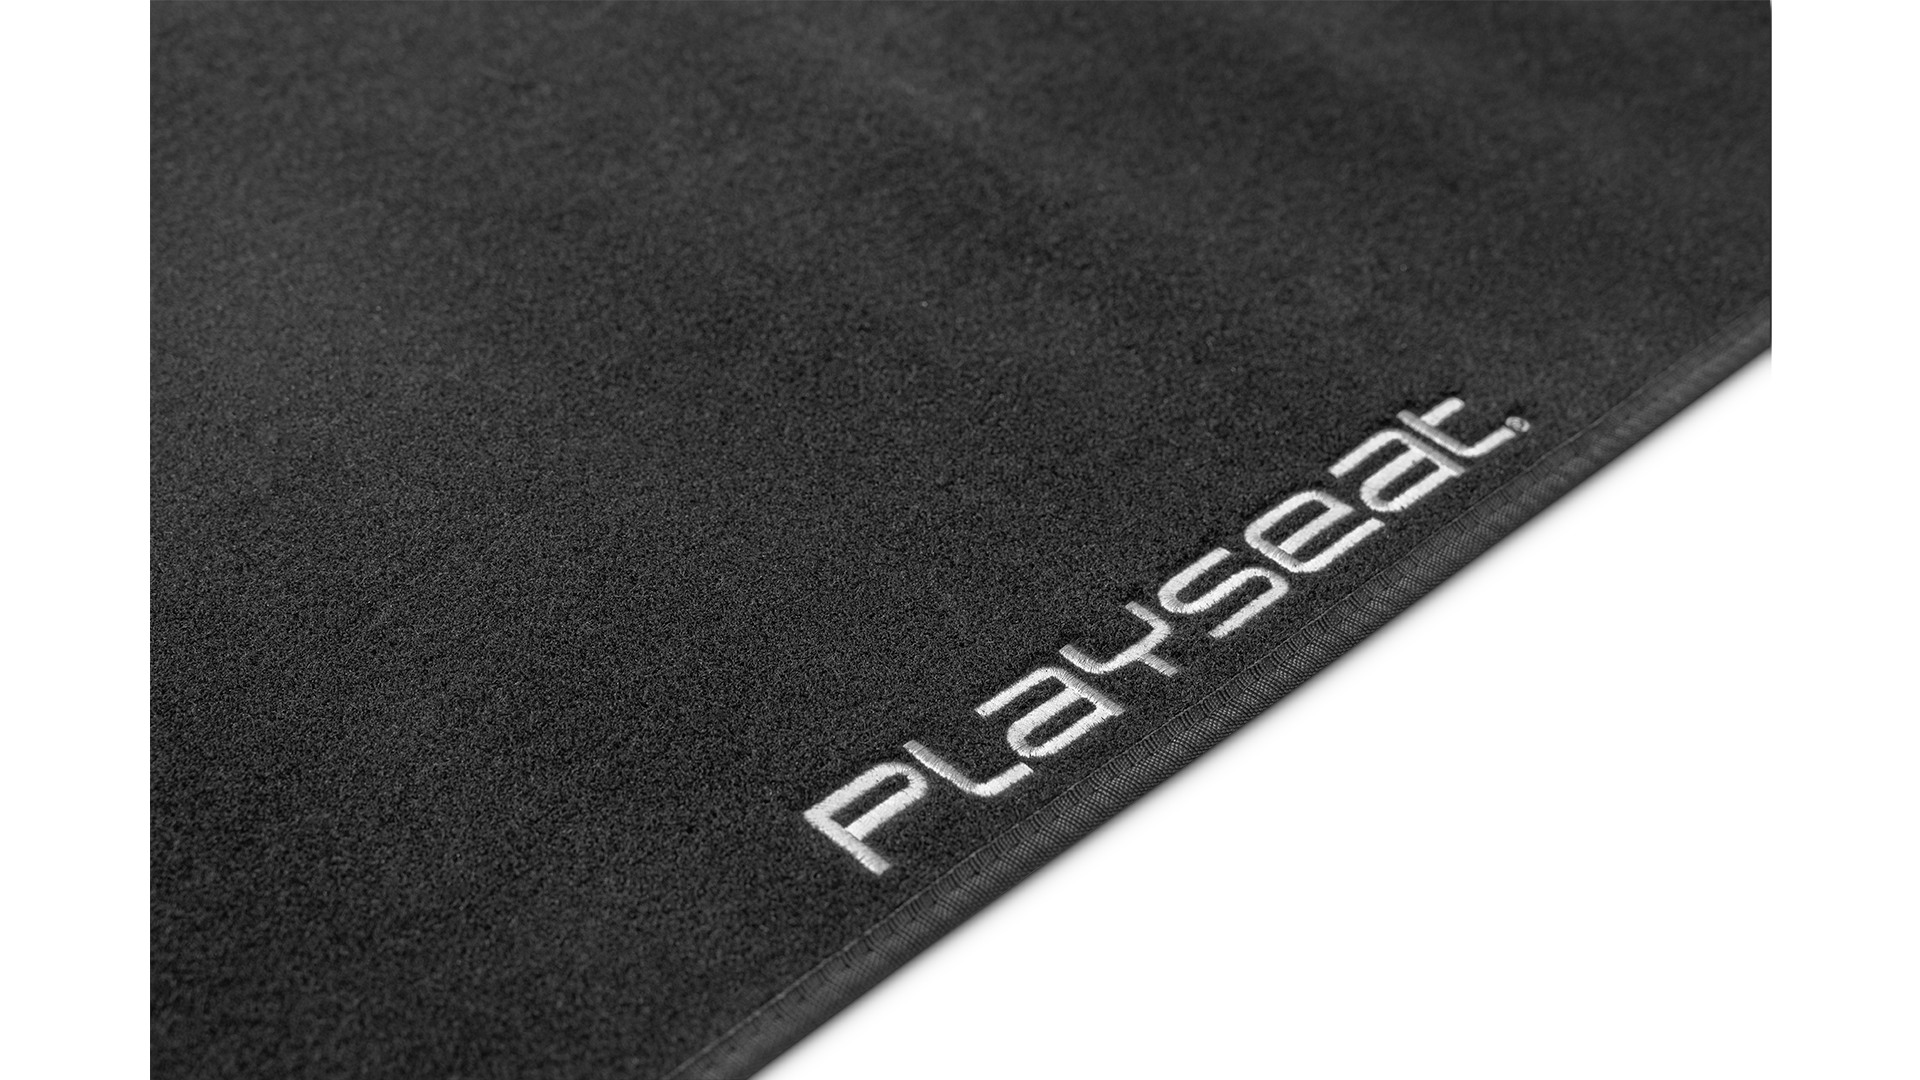 playseat-floor-mat-logo-1920x1080-1.png